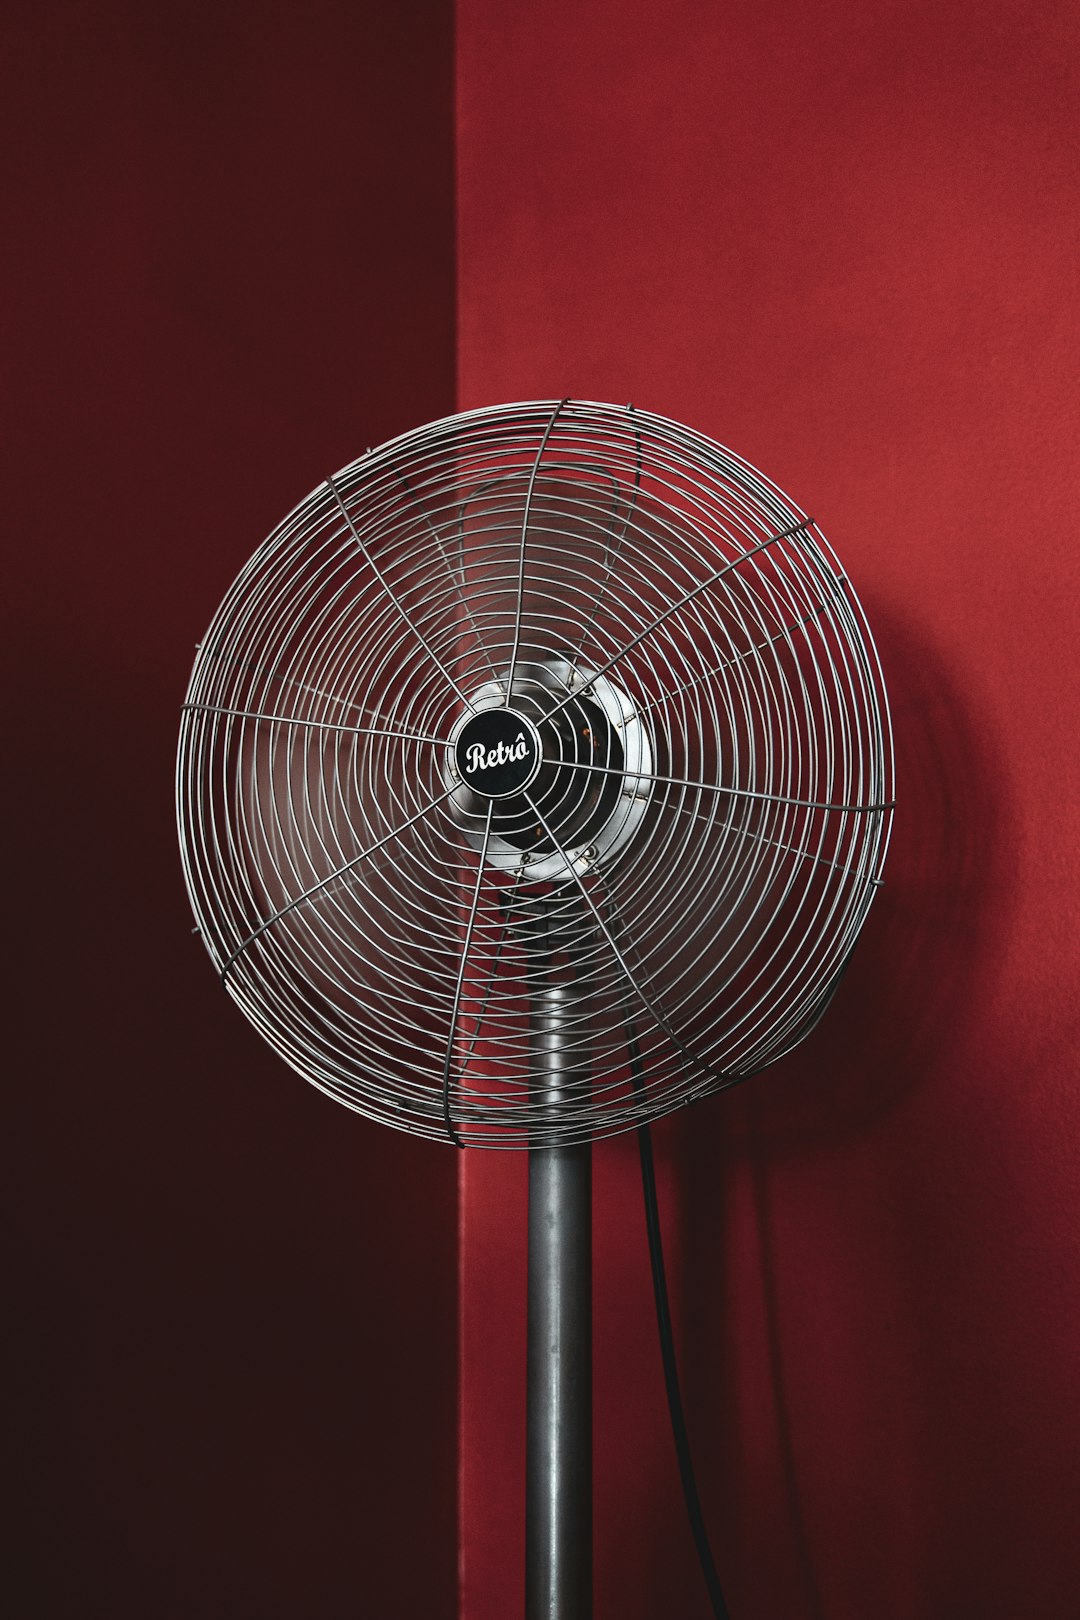  black stand fan turned on in red room fan